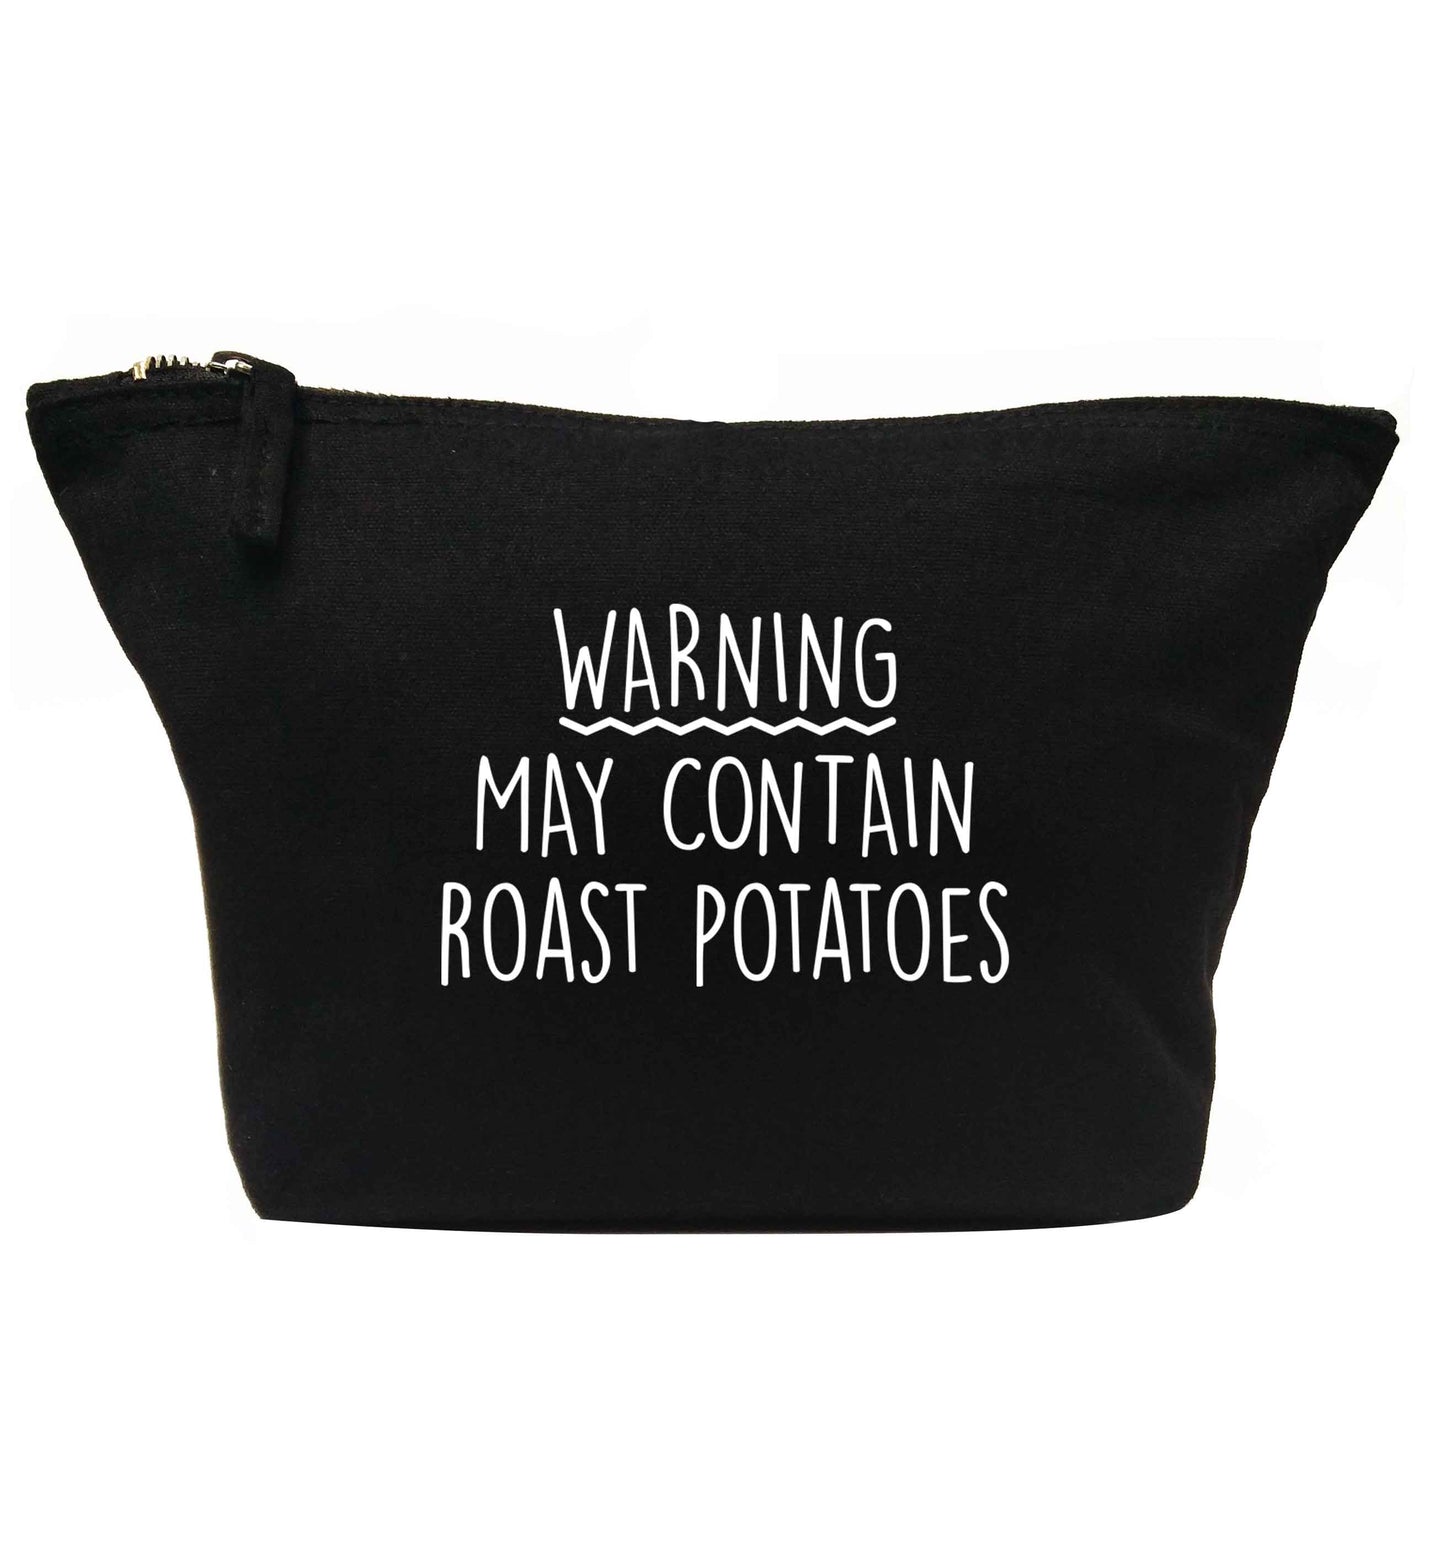 Warning may containg roast potatoes | Makeup / wash bag